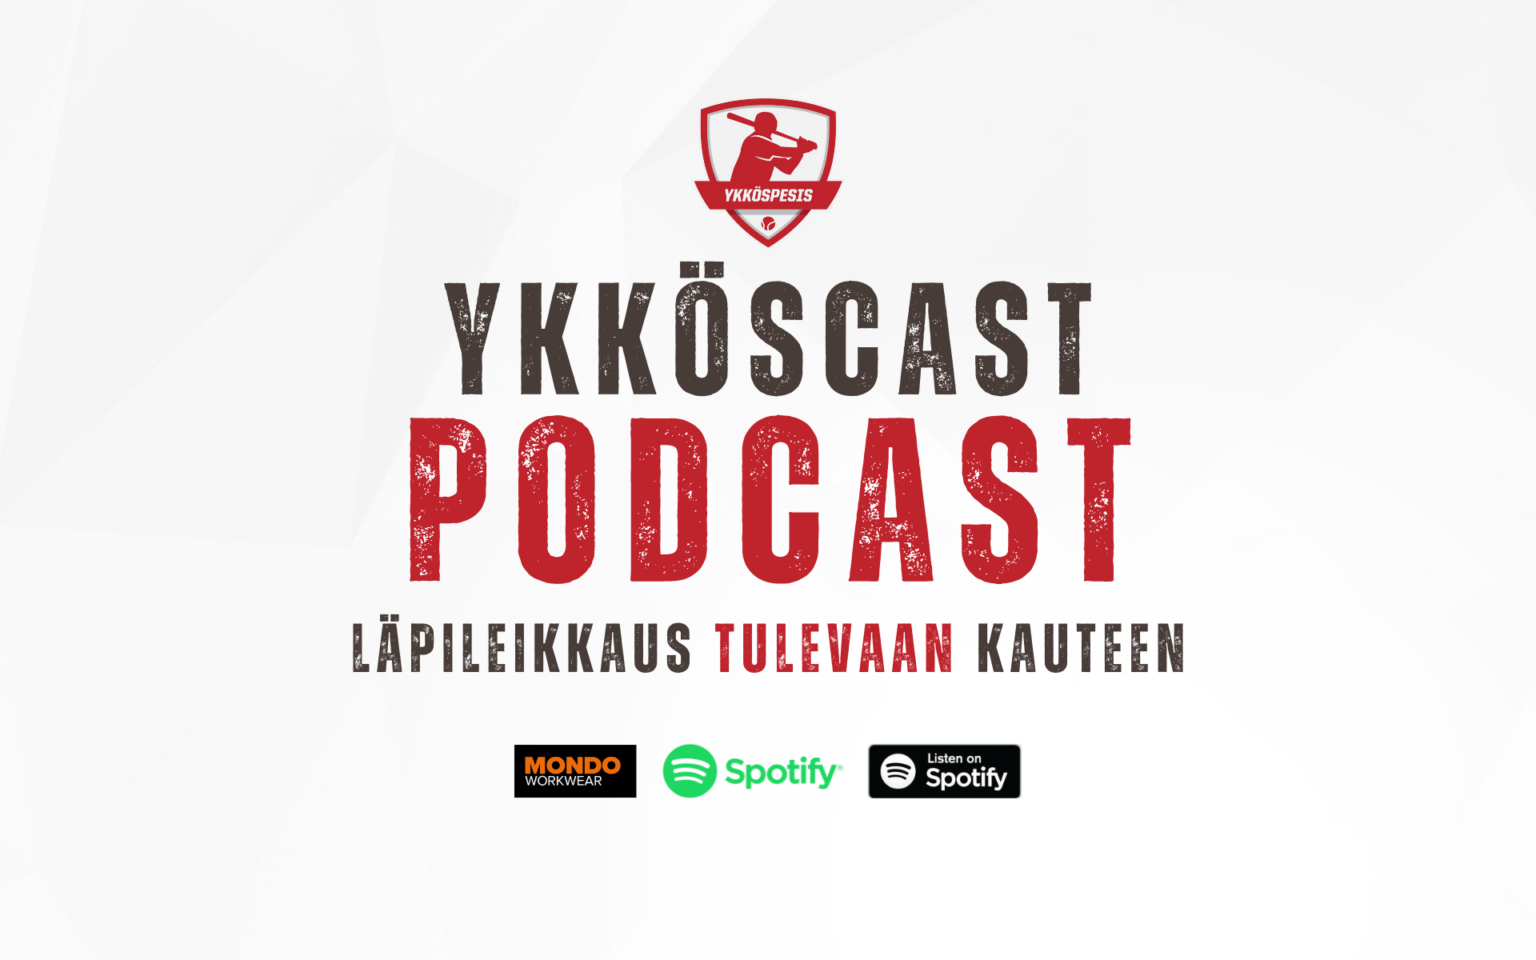 Ykköscast-podcast läpileikkaa tulevan Ykköspesis-kauden